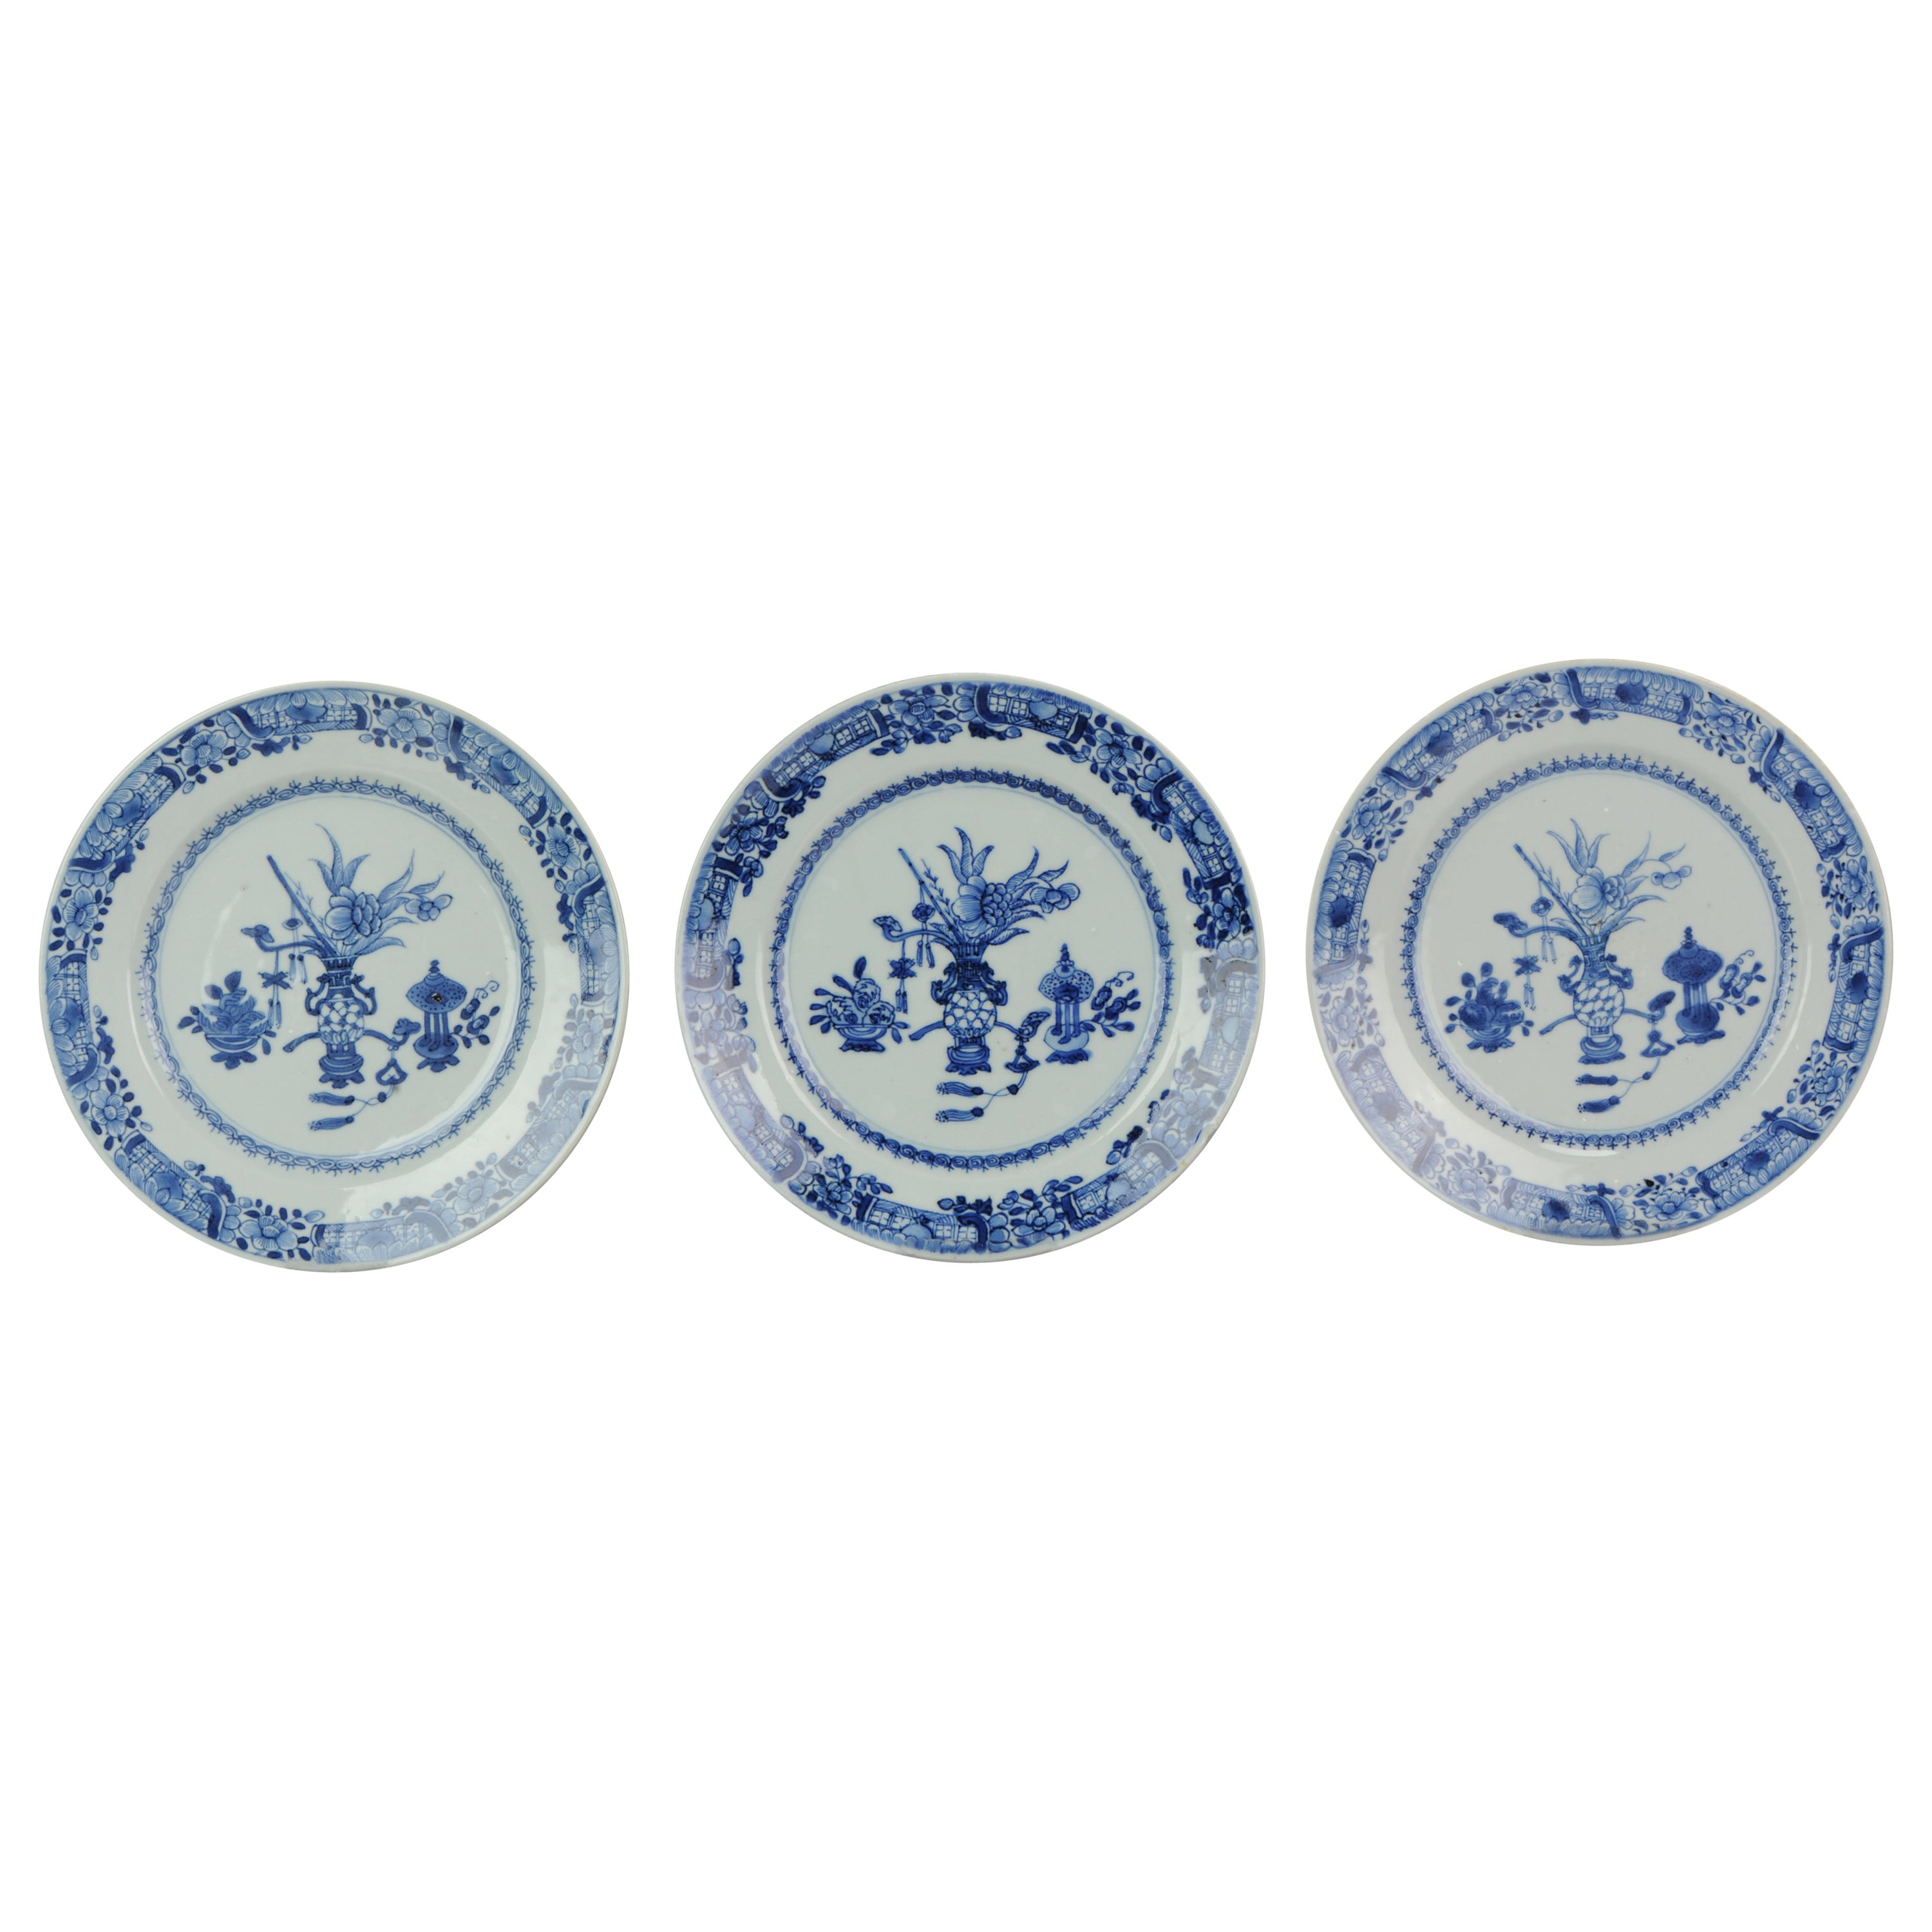 Ensemble de 3 assiettes plates anciennes chinoises en porcelaine bleue et blanche, 18ème siècle